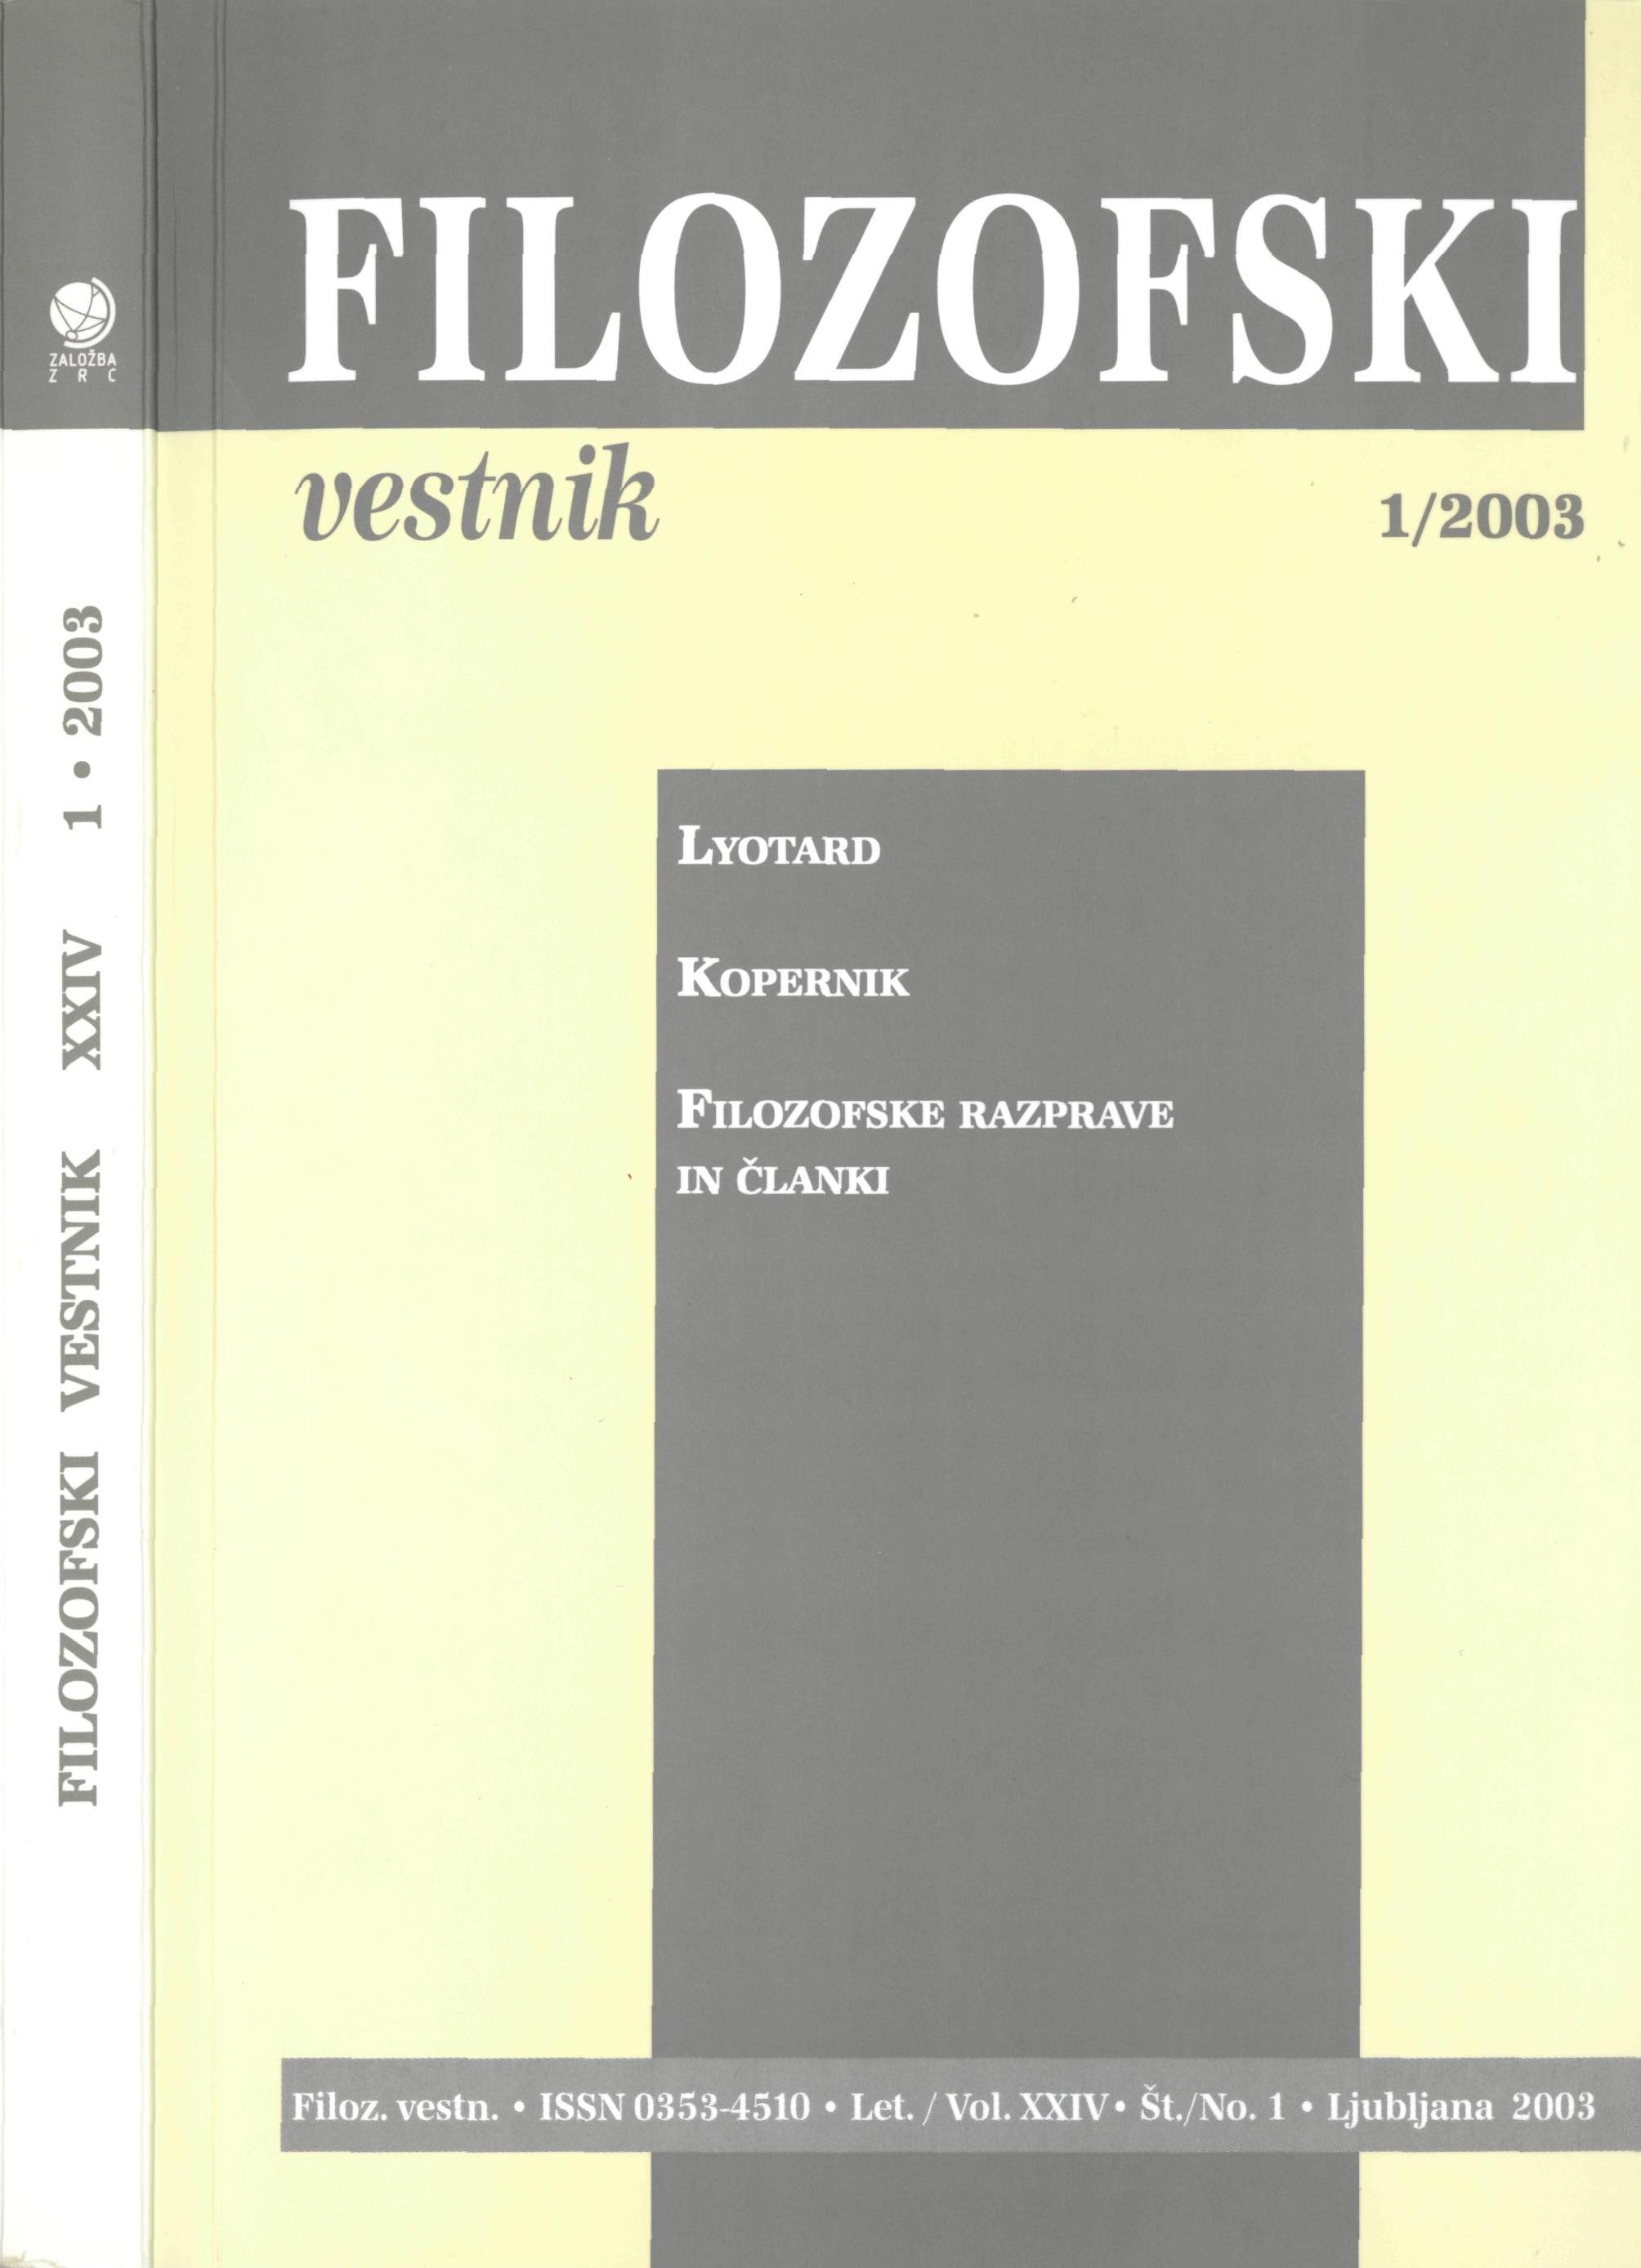 					Poglej Letn. 24 Št. 1 (2003): Lyotard, Kopernik, Filozofske razprave in članki, Prikazi in ocene
				